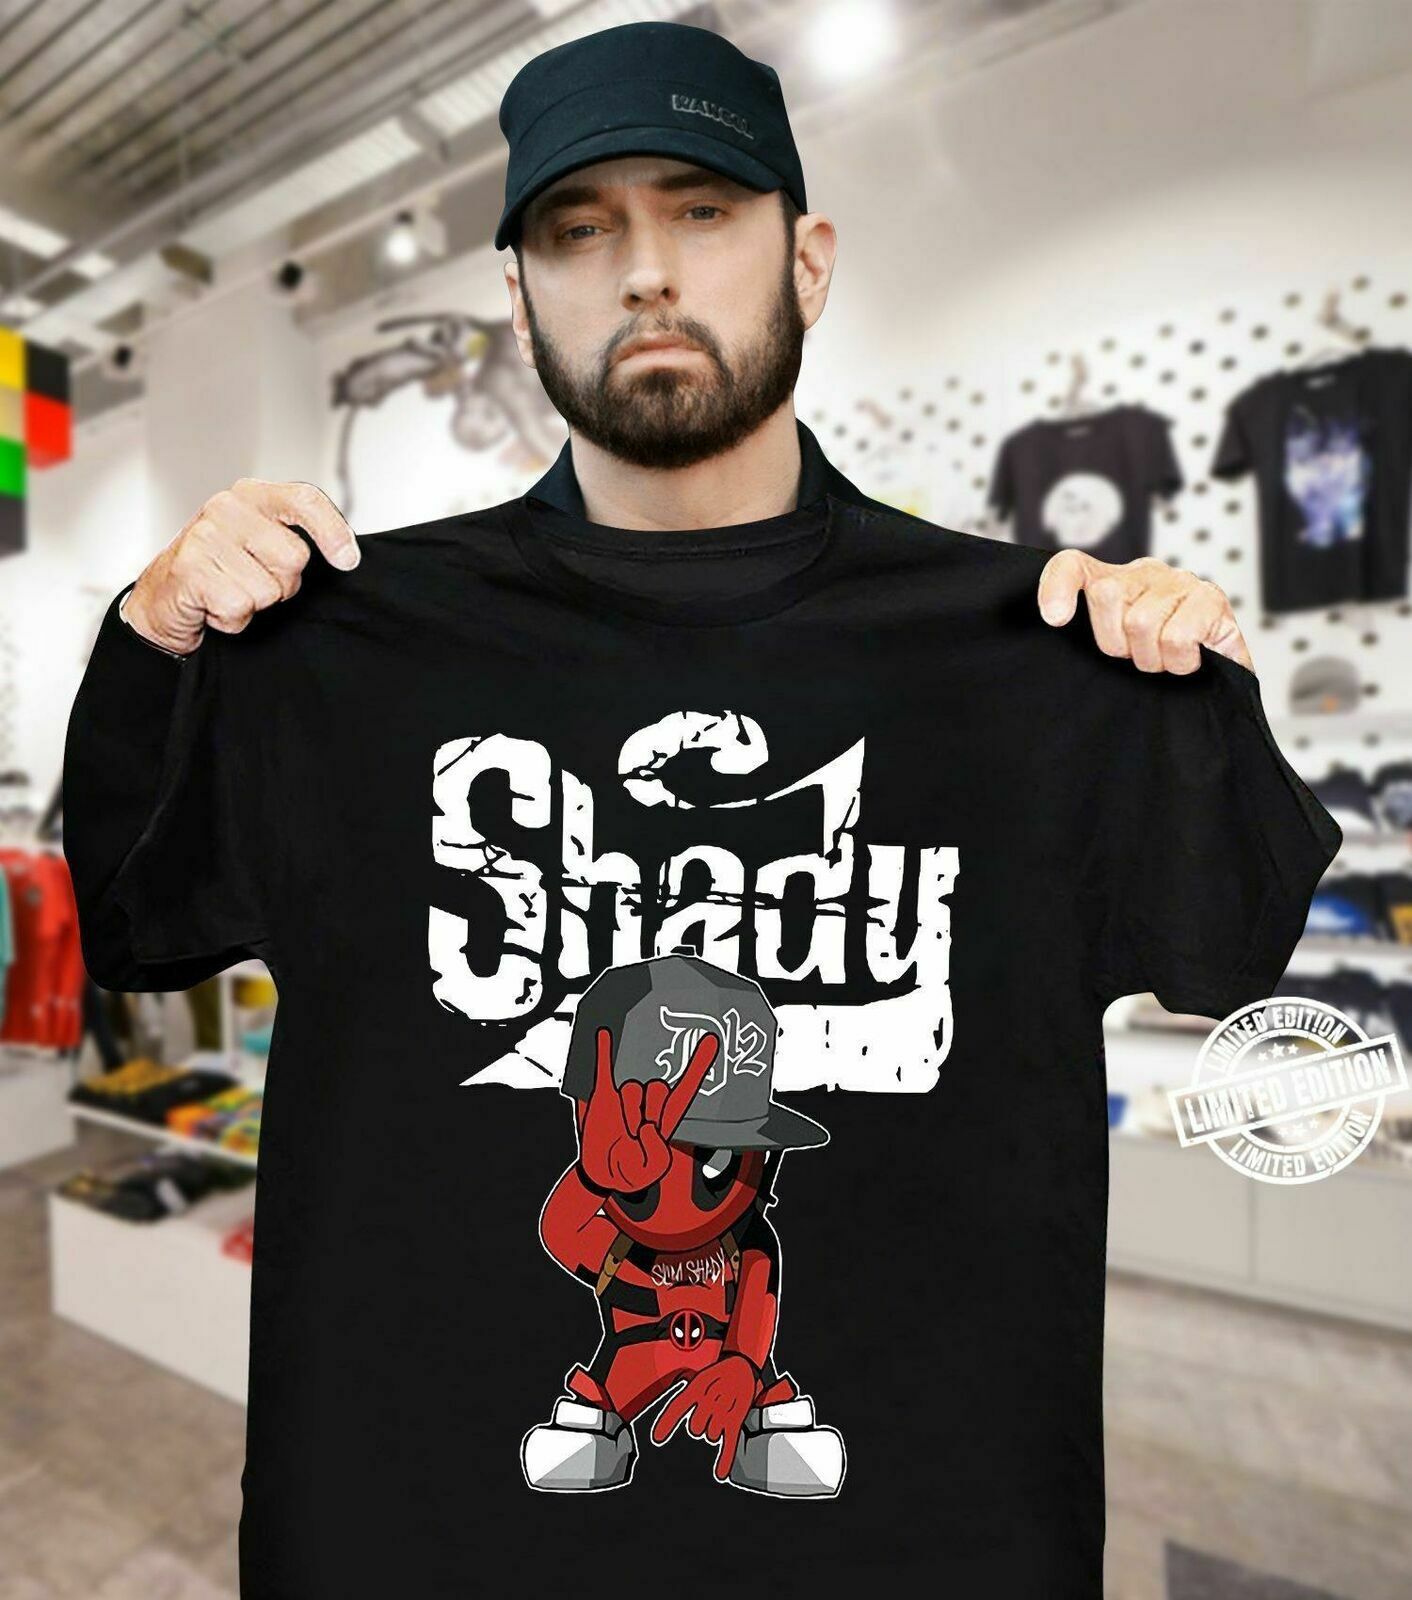 Eminem Slim Shady T-Shirt